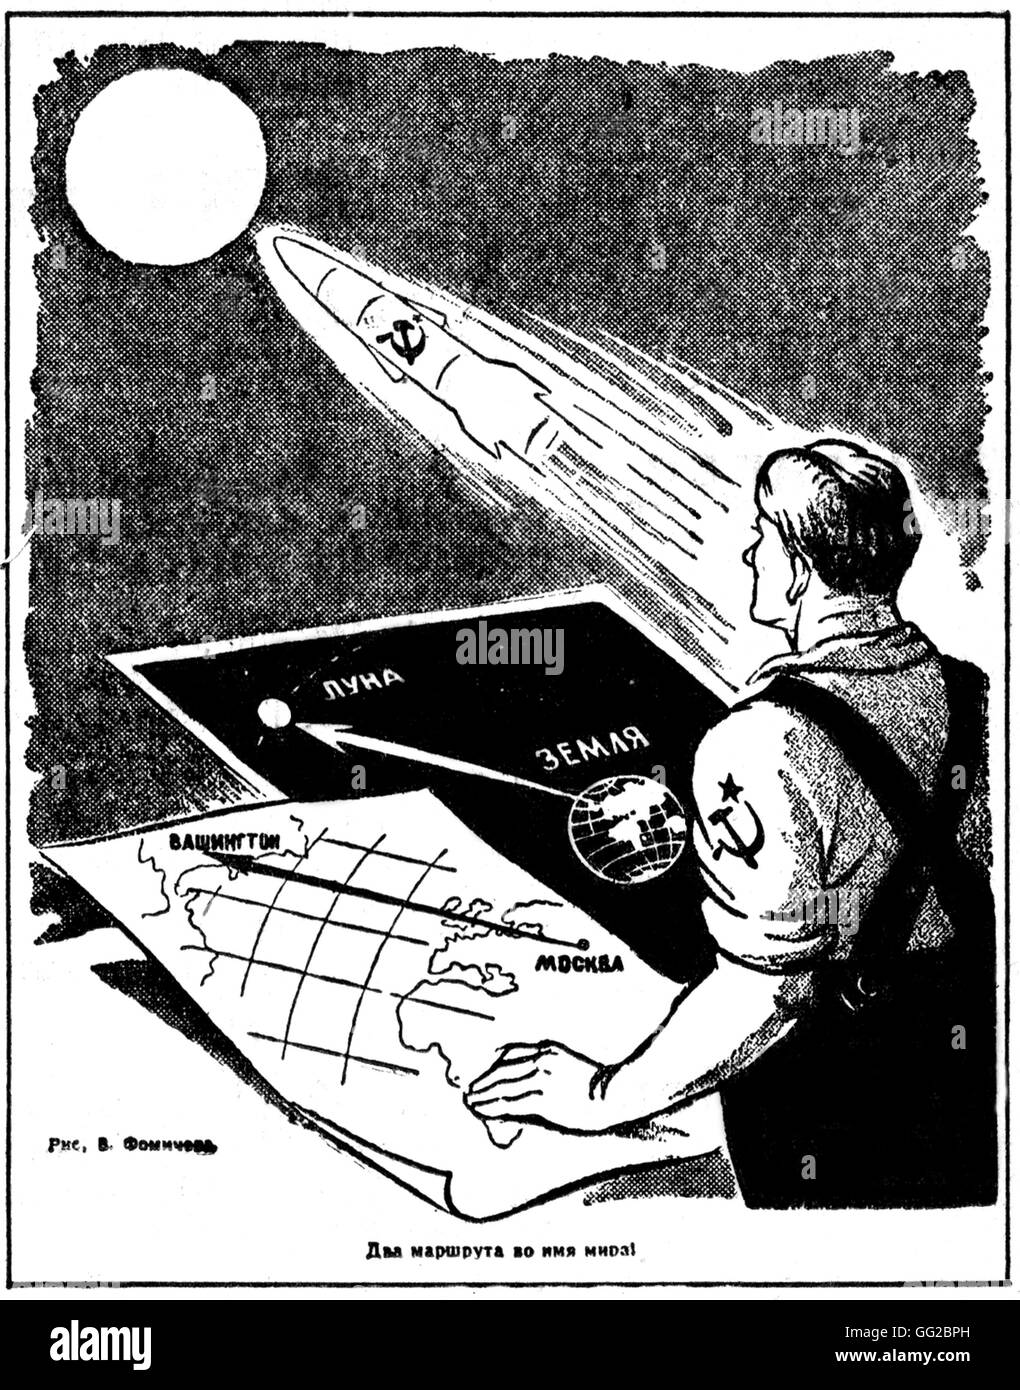 Disegno in 'Trud' : 'Earth-Moon' (oggi, a 2 min 24 s. dopo la mezzanotte ora di Mosca, il razzo spaziale ha raggiunto la luna) Settembre 14, 1959 U.R.S.S. Foto Stock